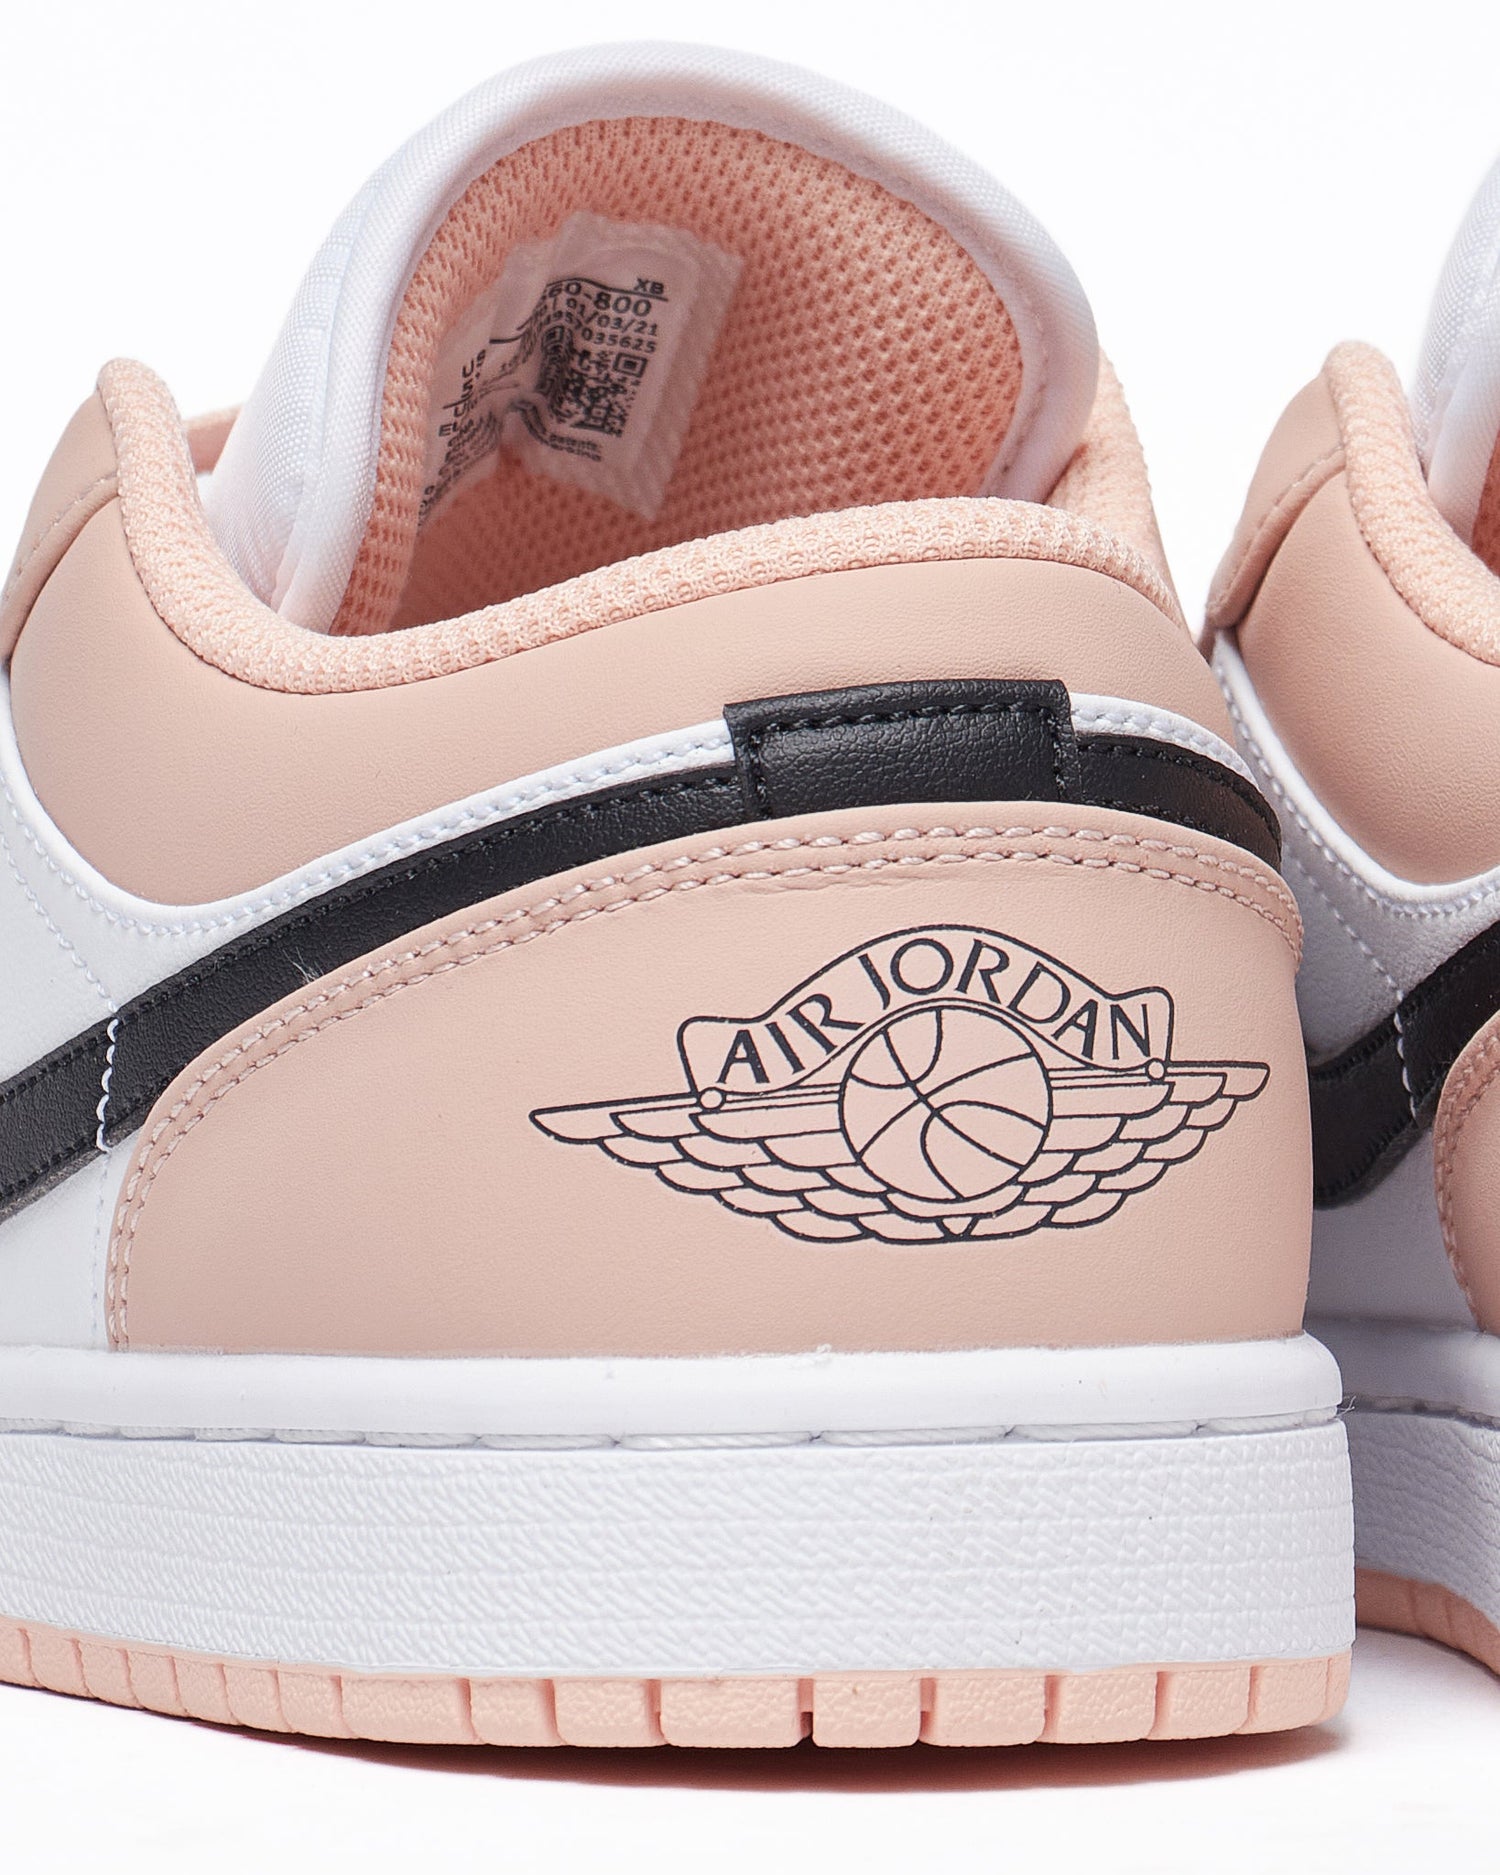 MOI OUTFIT-NIK Air Jordan Low Pink Sneakers Shoes 74.90